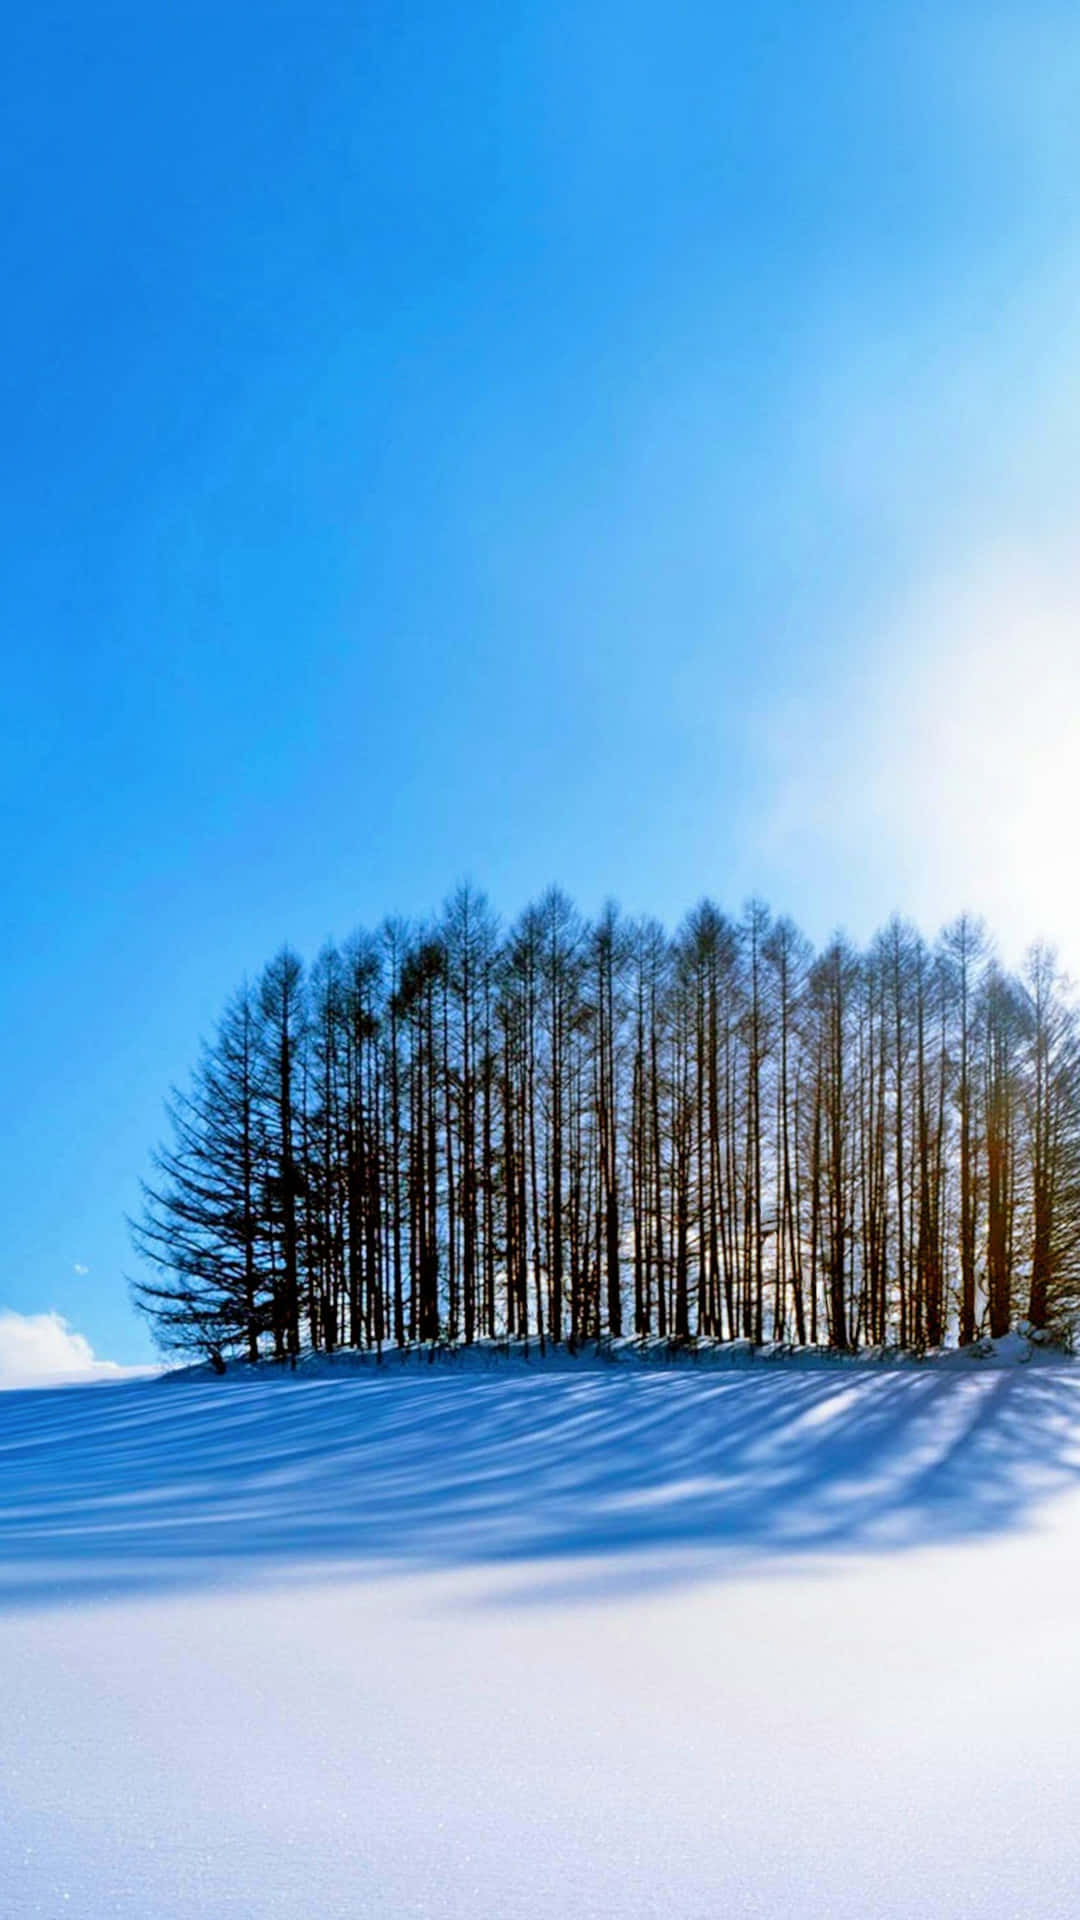 Unacolina Cubierta De Nieve Con Árboles En El Fondo Fondo de pantalla